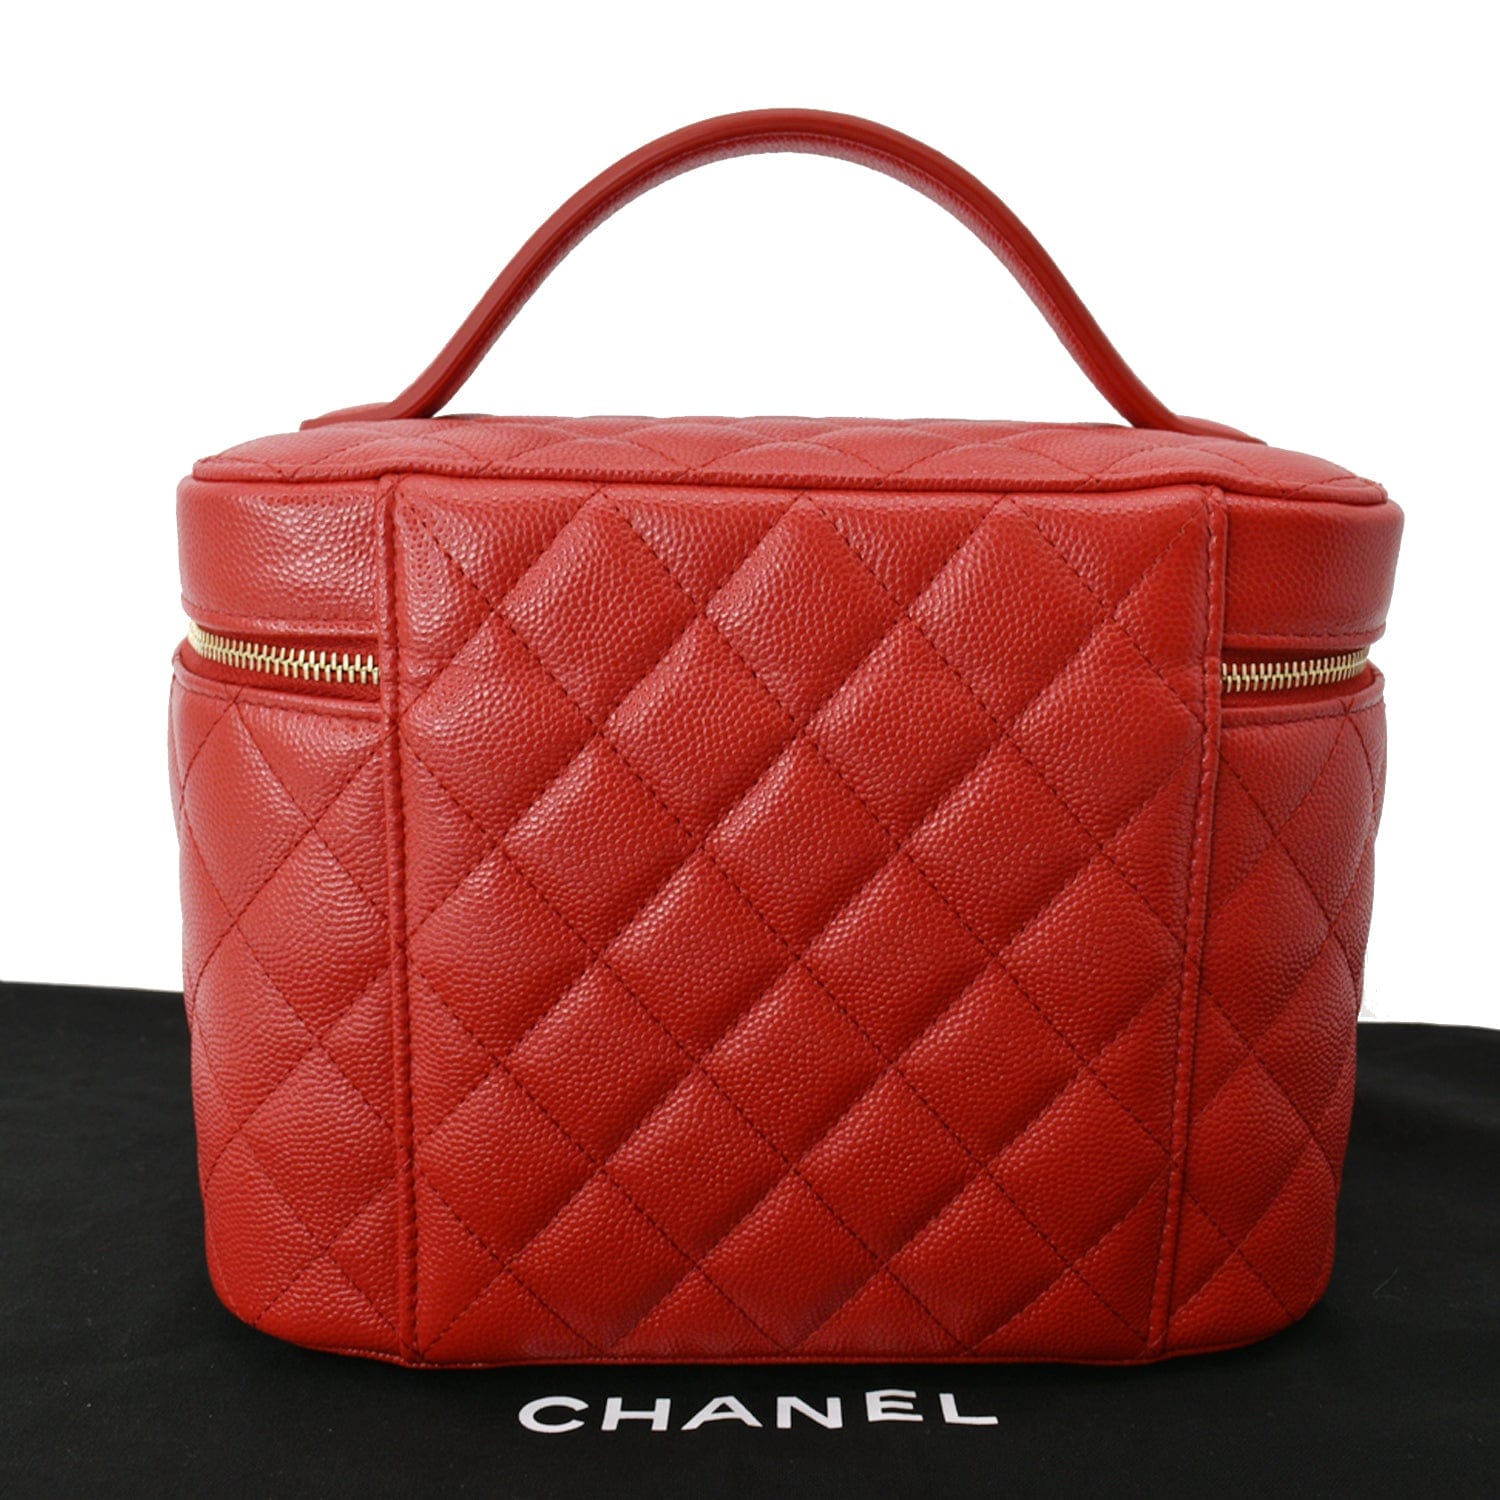 No.2326-Chanel Vintage Caviar Turn-Lock Shoulder Bag – Gallery Luxe